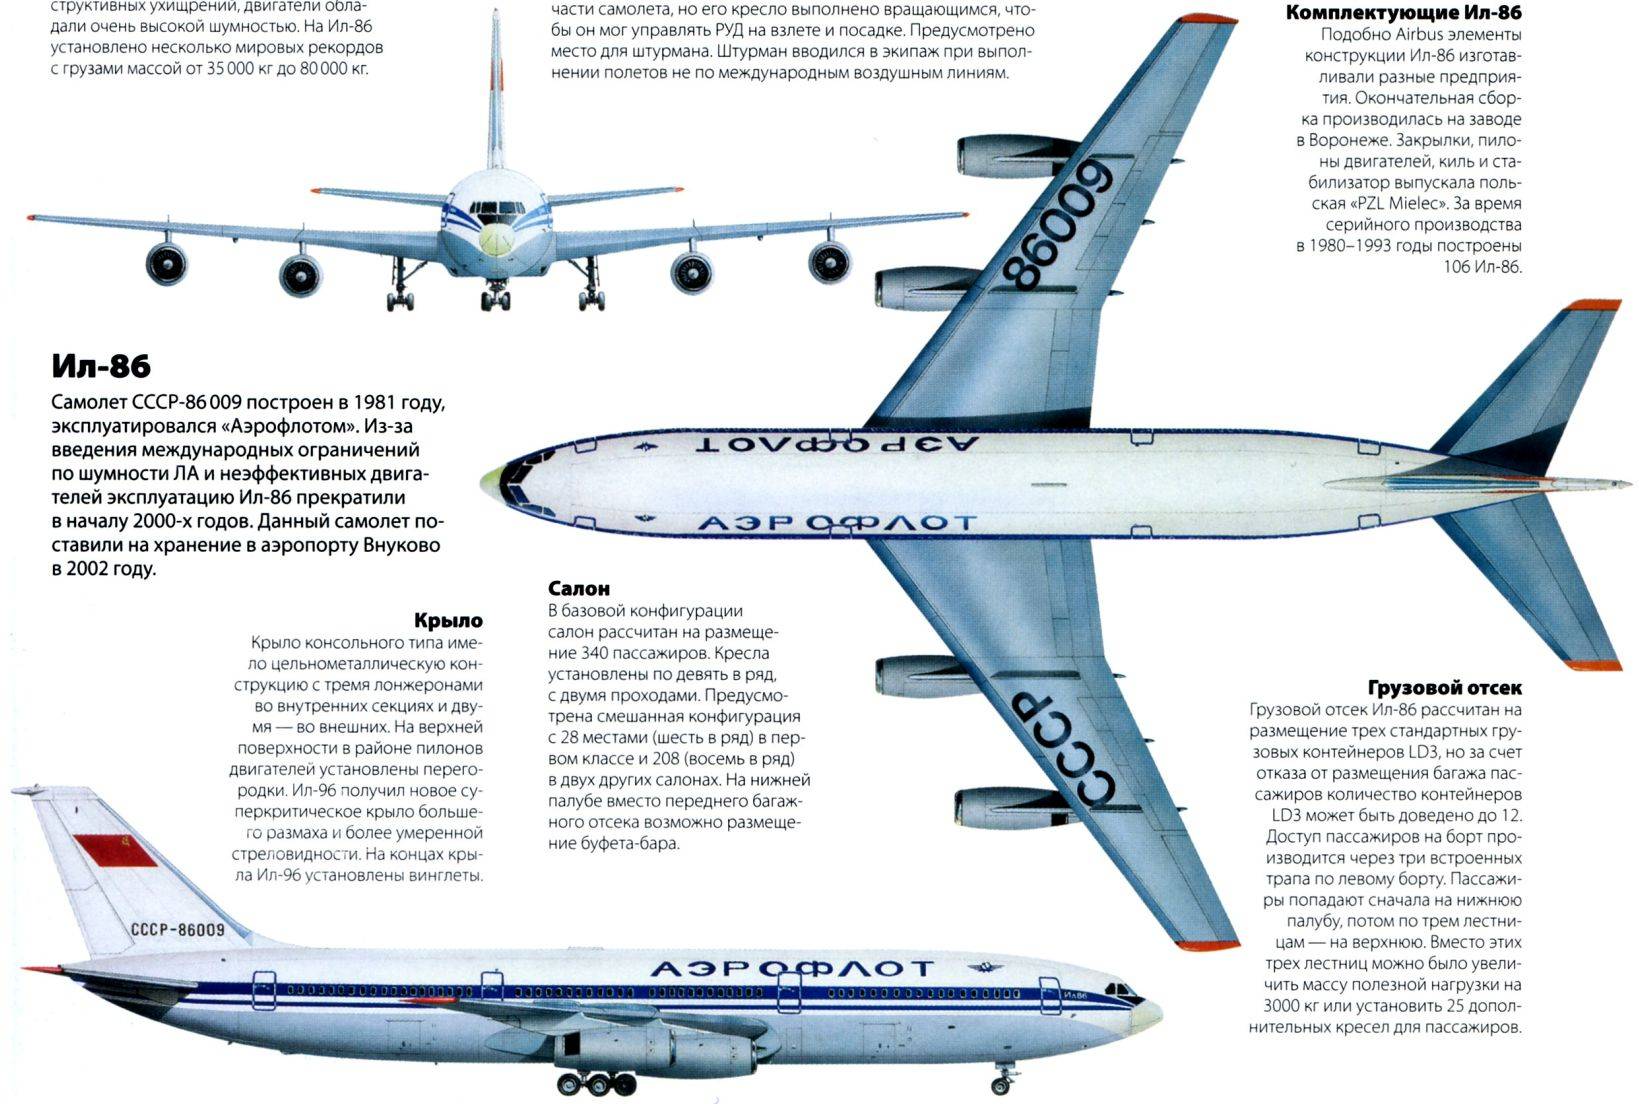 Обзор схемы самолета и лучших мест в боинге 737 800 россия